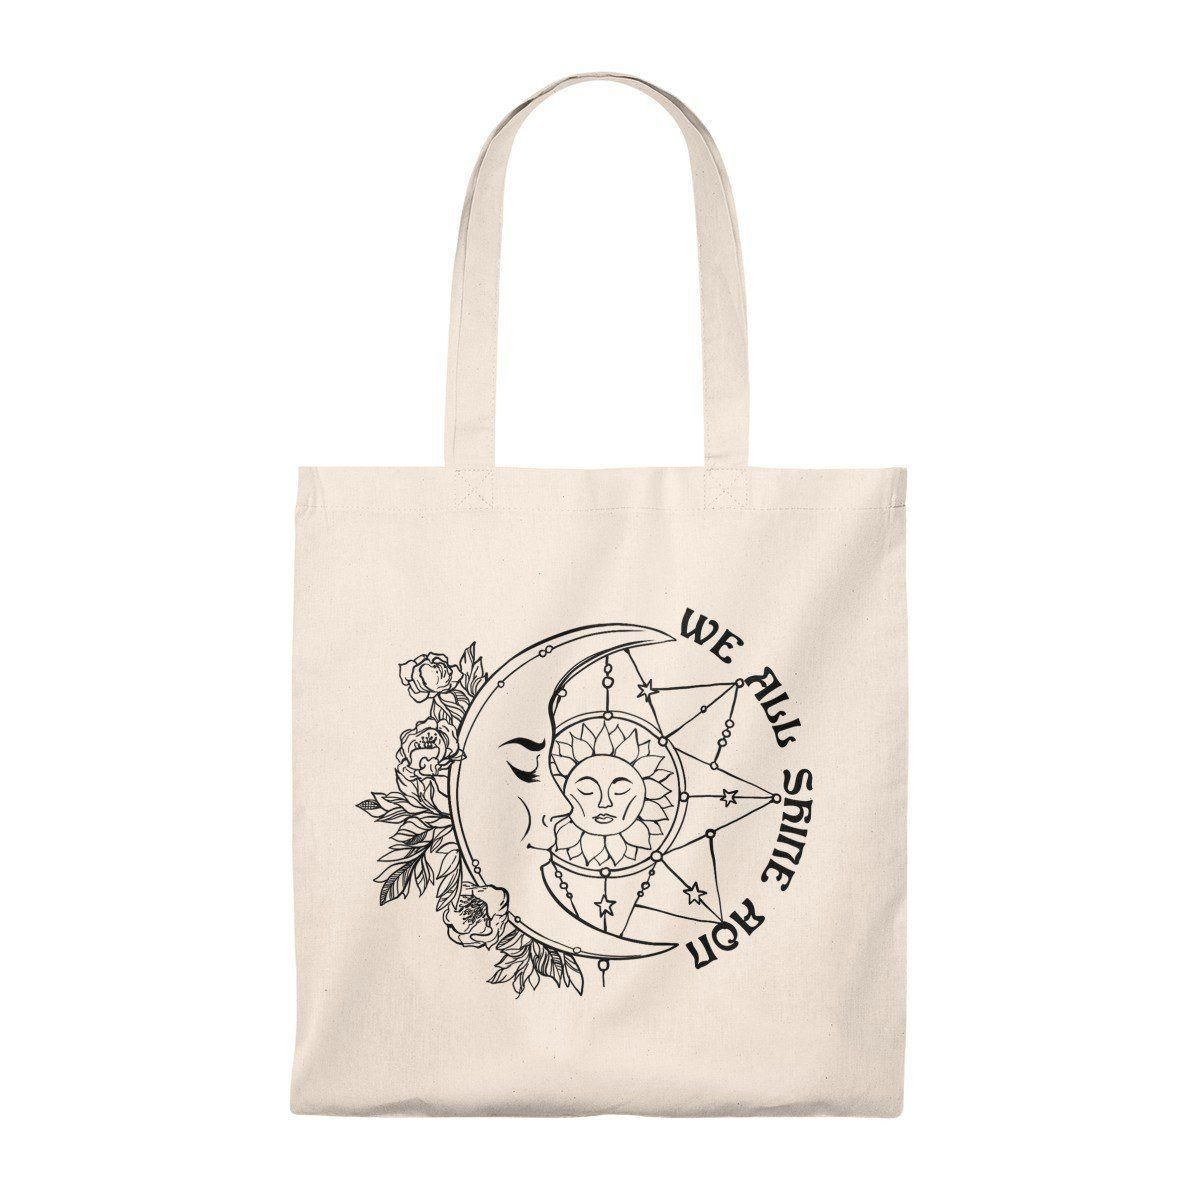 We All Shine On Sun And Moon Printed Tote Bag